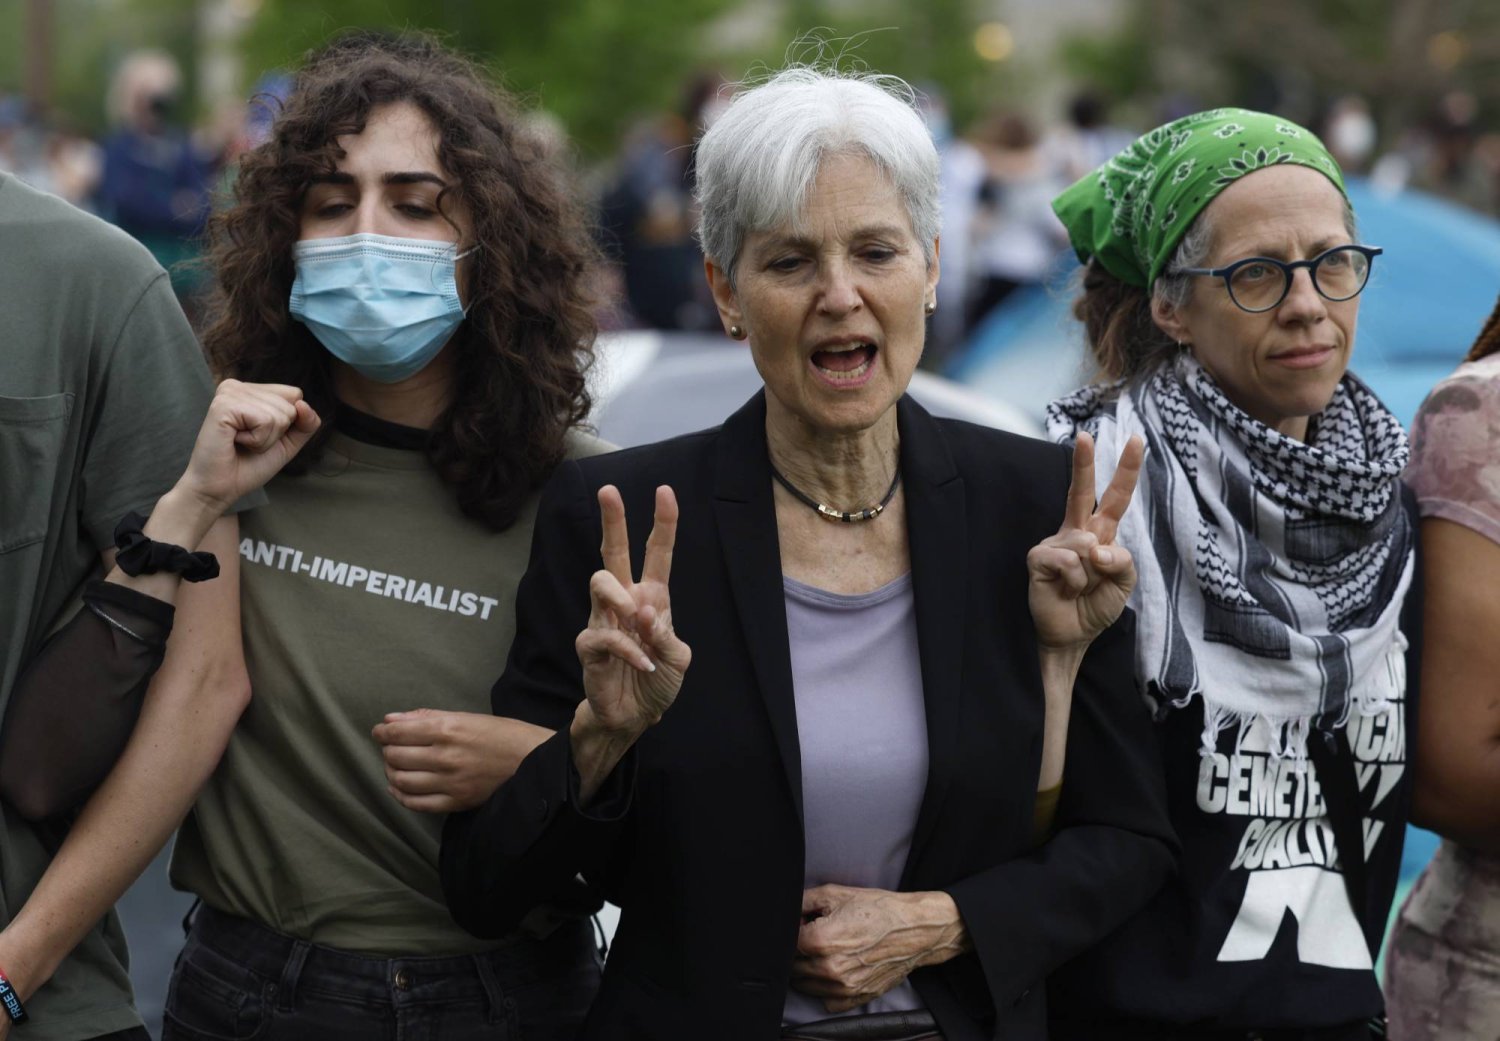 ضحة في أمريكا.. لحظة اعتقال مرشحة رئاسية شاركت في احتجاجات مؤيدة لغزة